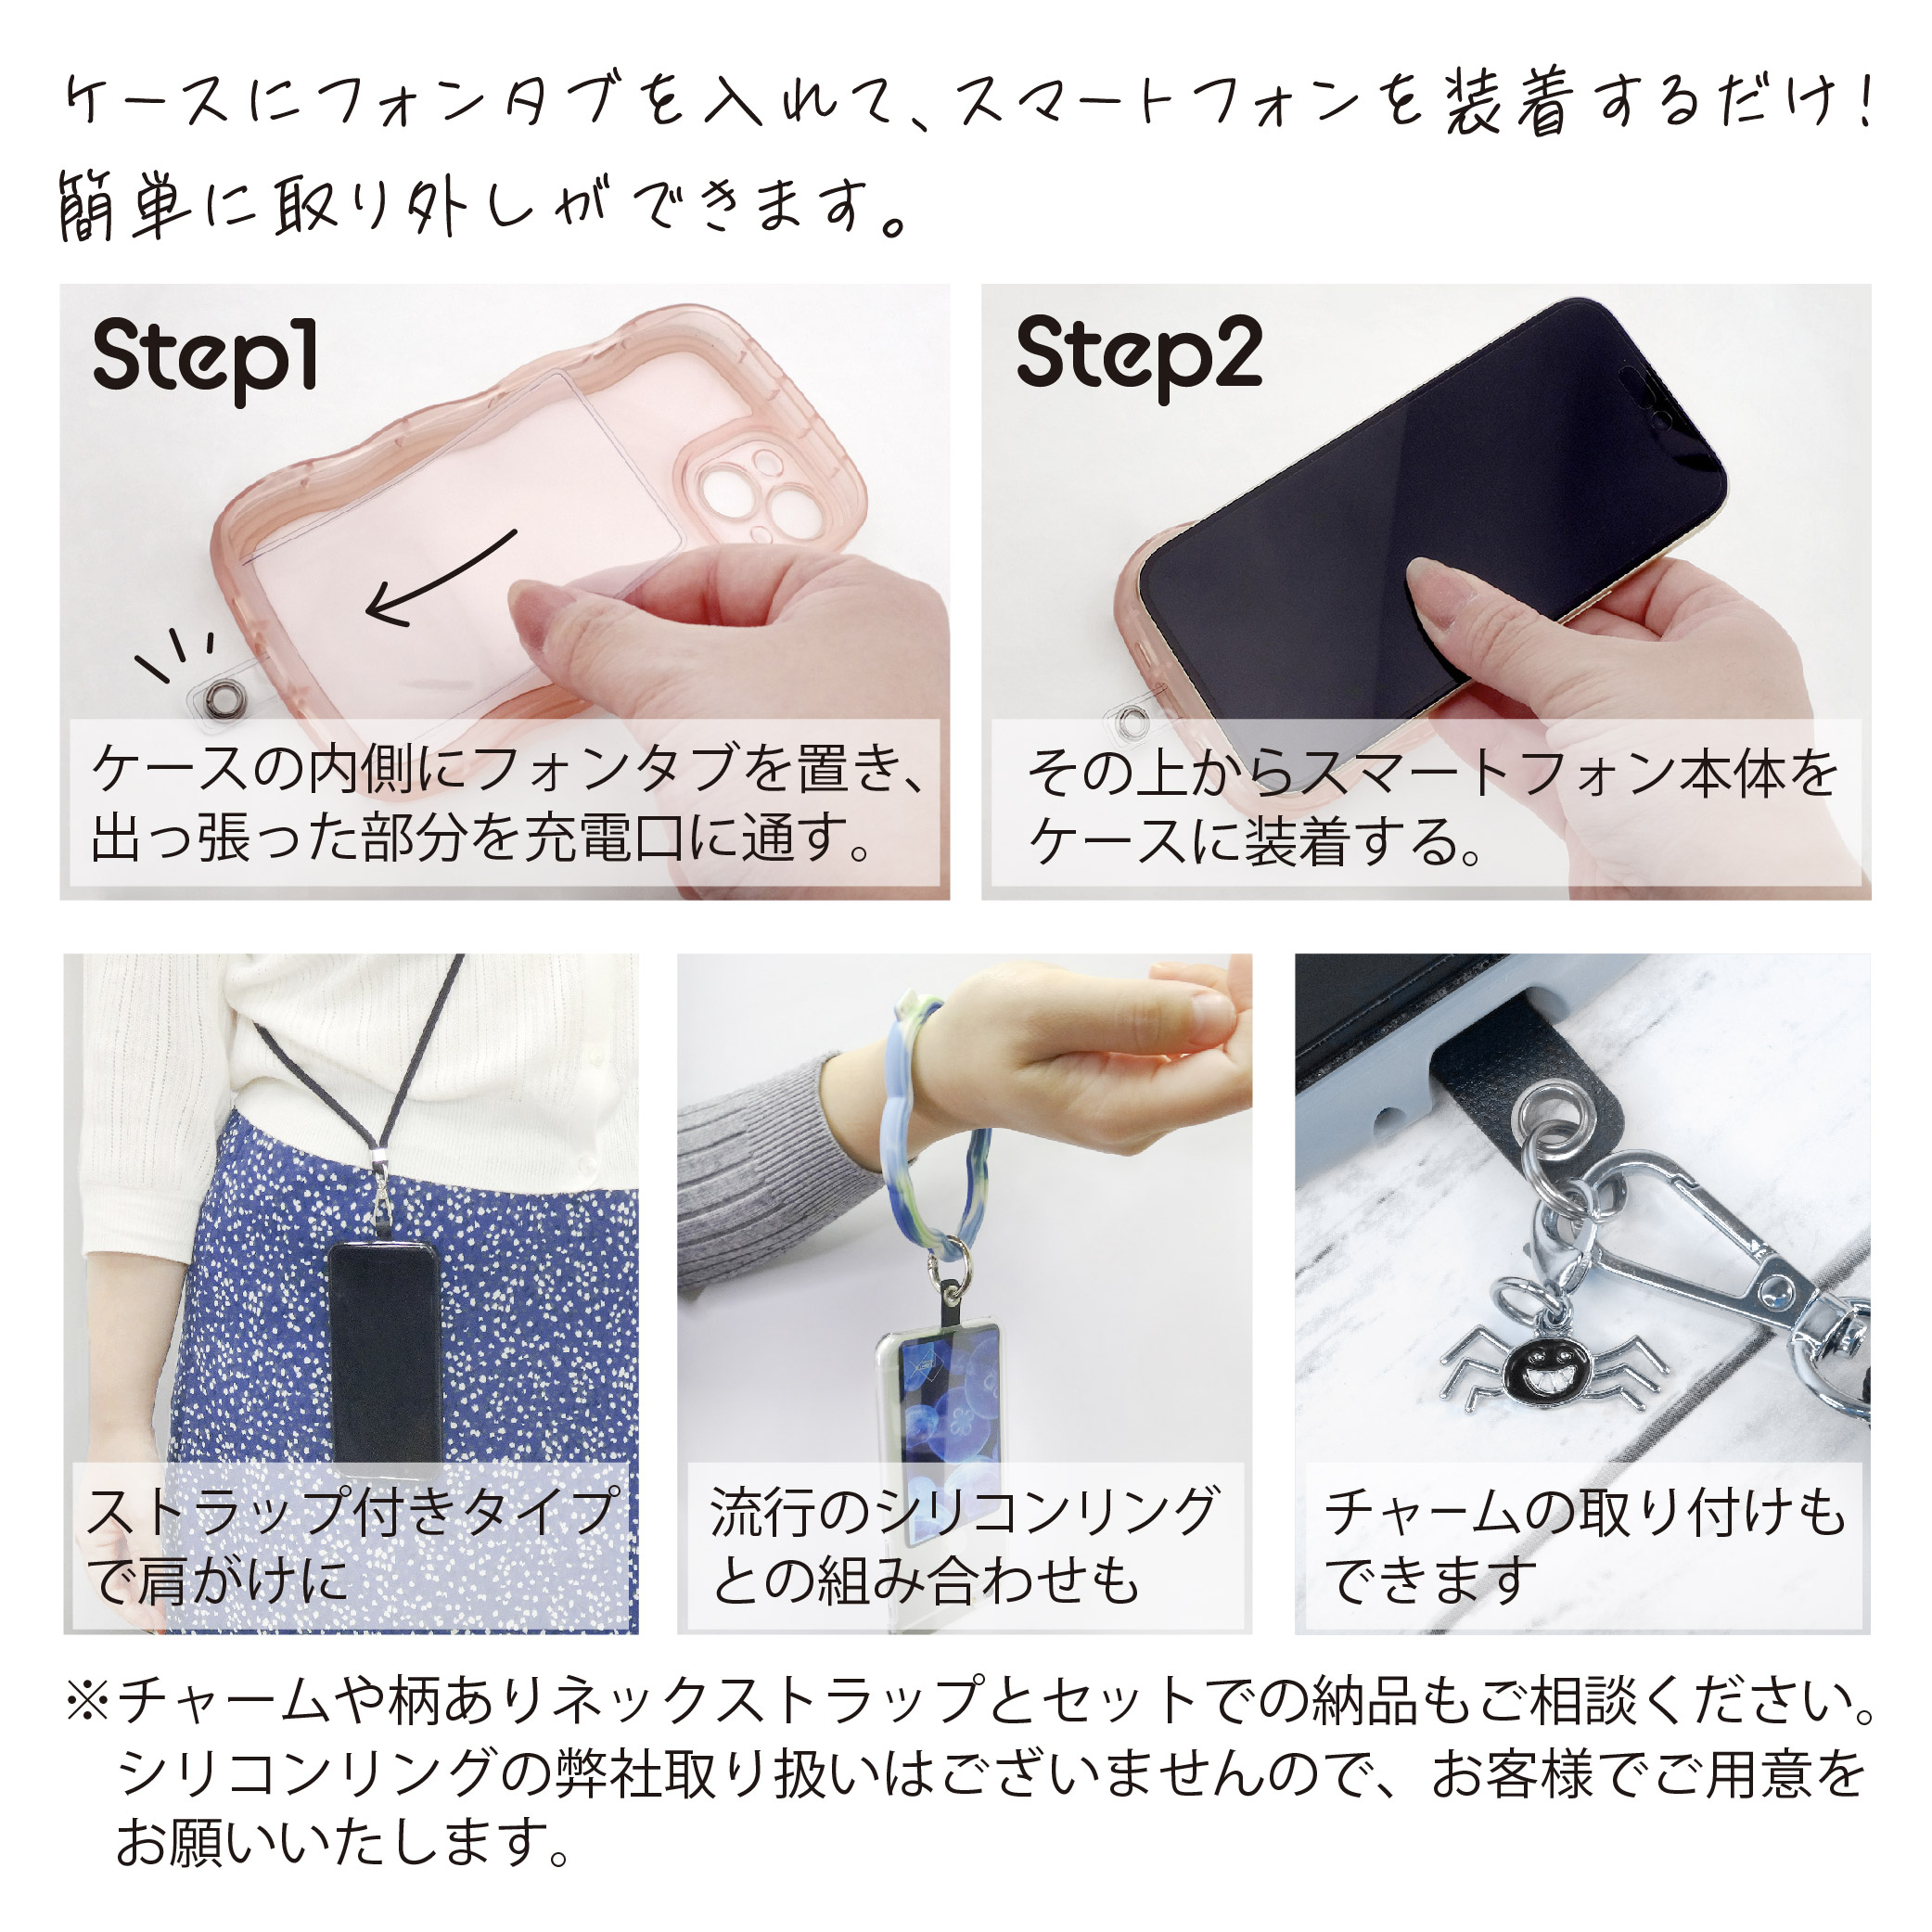 Font tab/smartphone strap holder◆